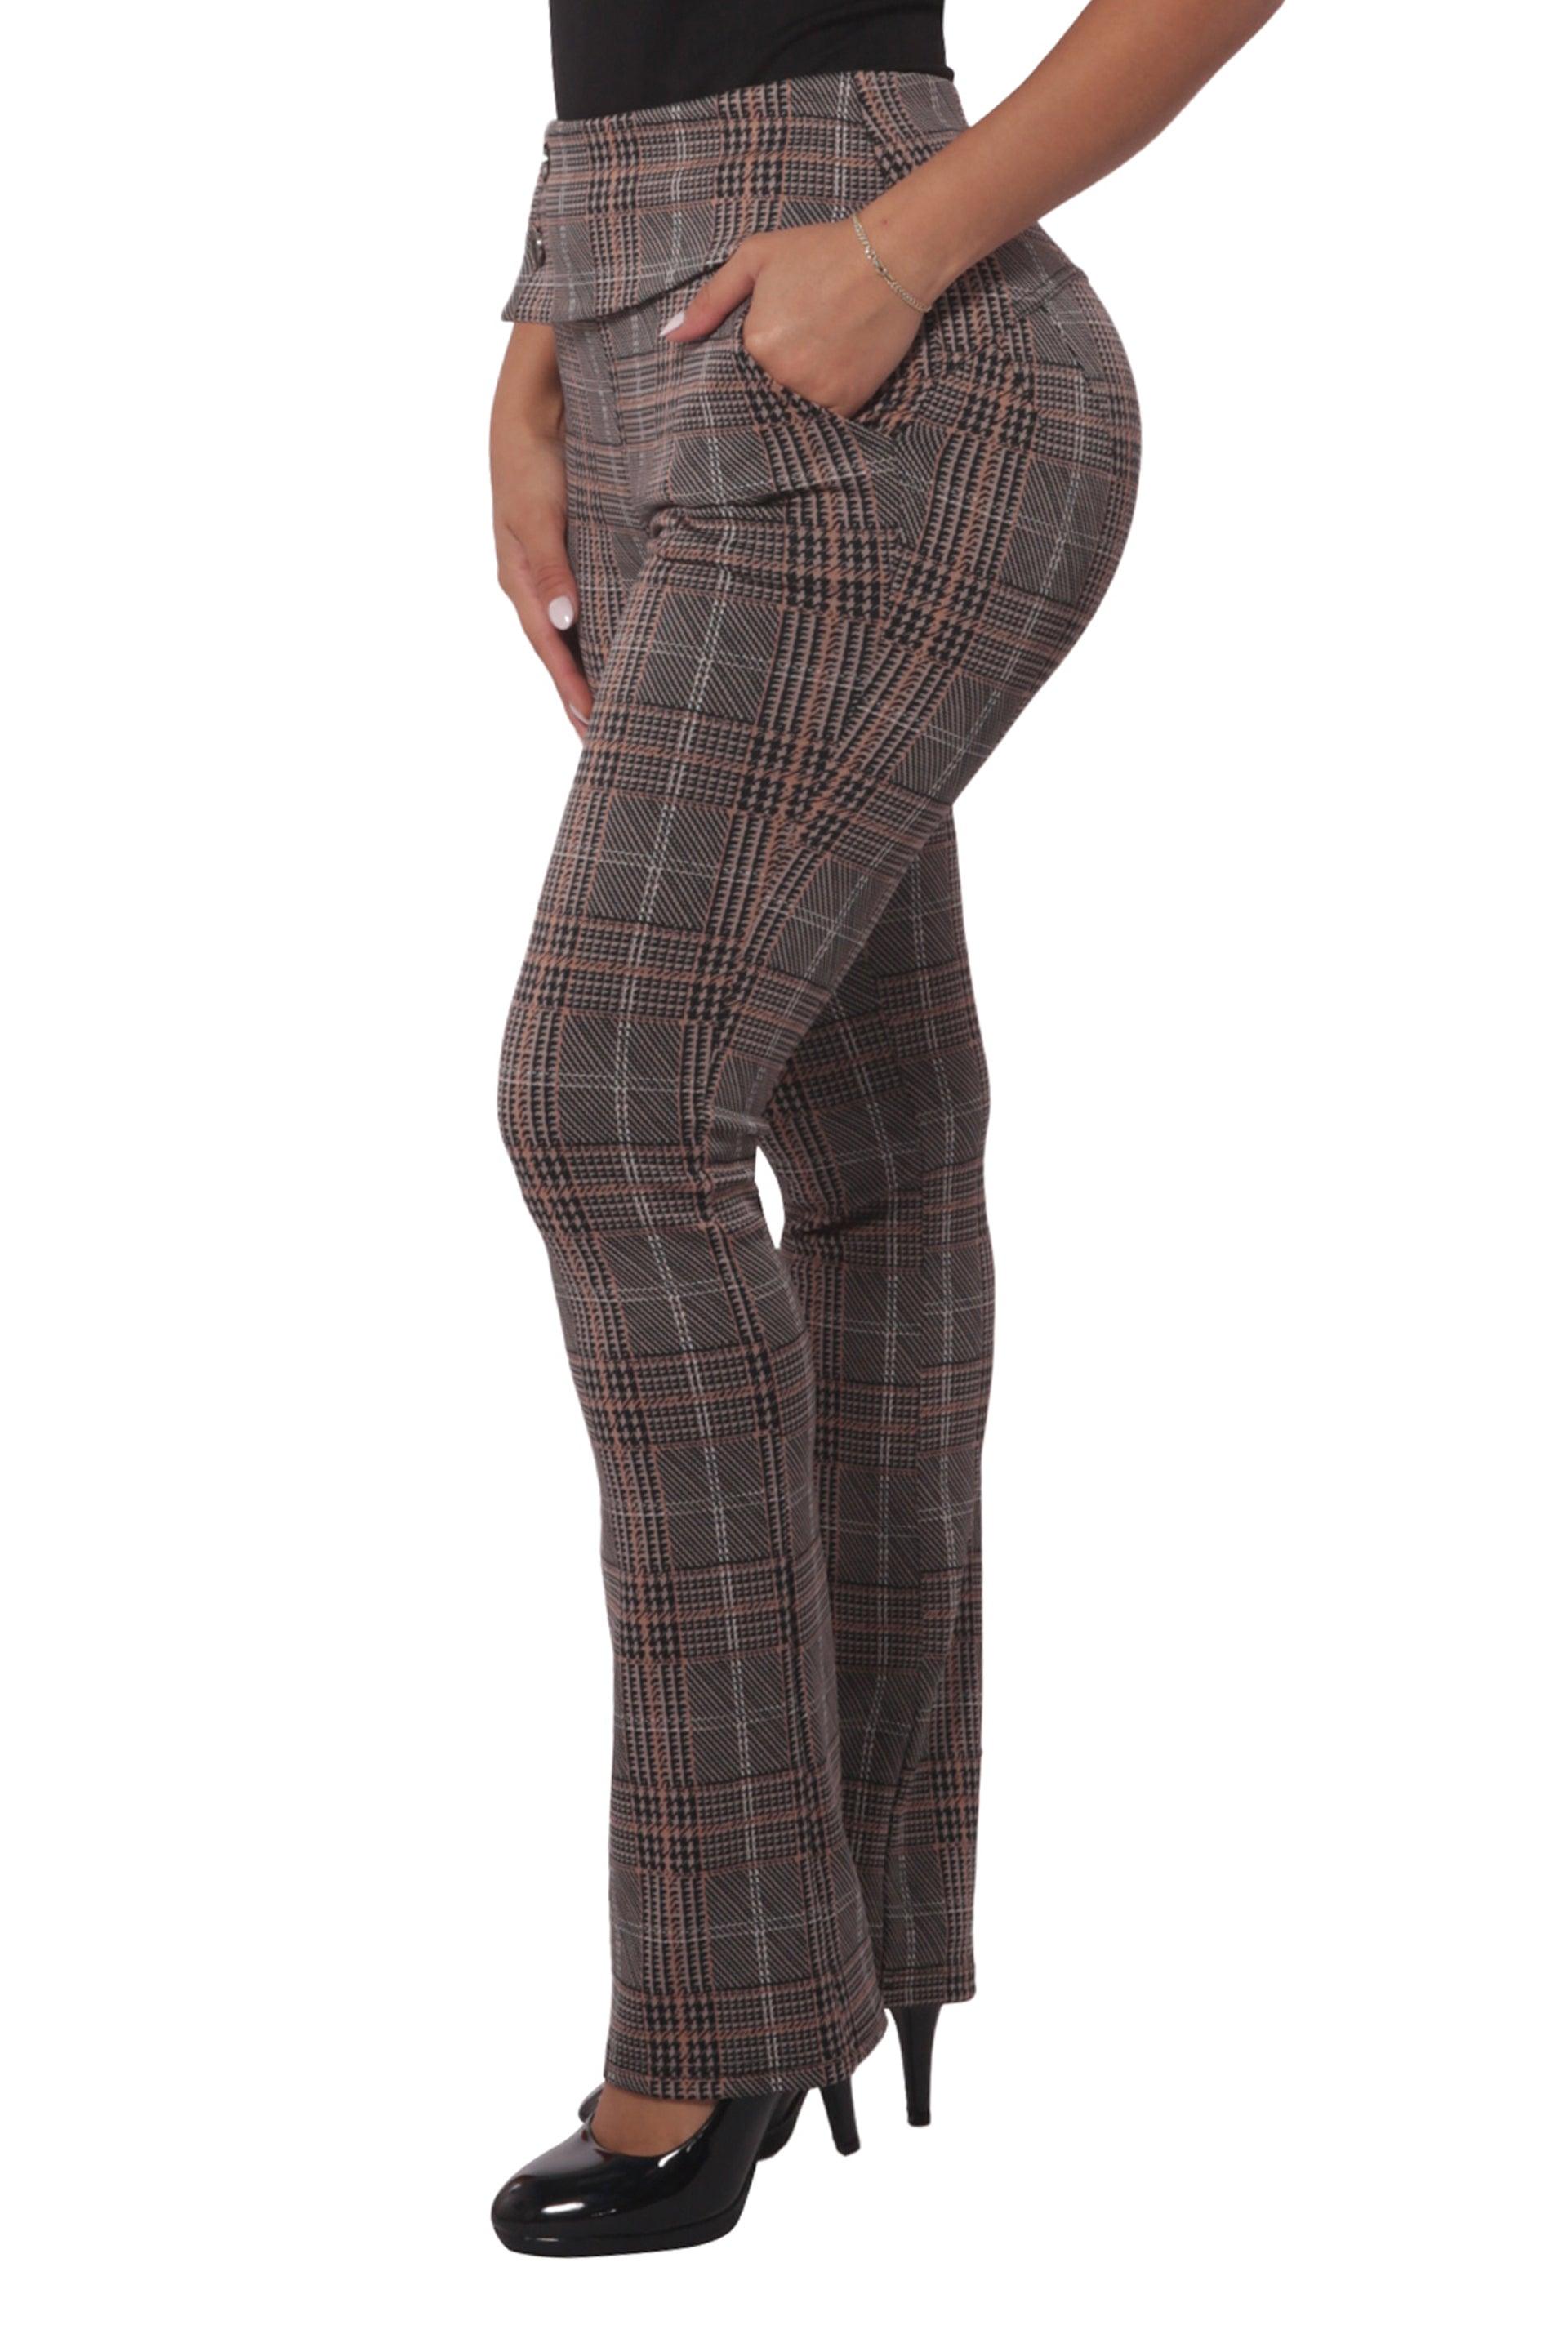 Asymmetrical Button Waist Flare Pants - Khaki, Brown Plaid - SHOSHO Fashion